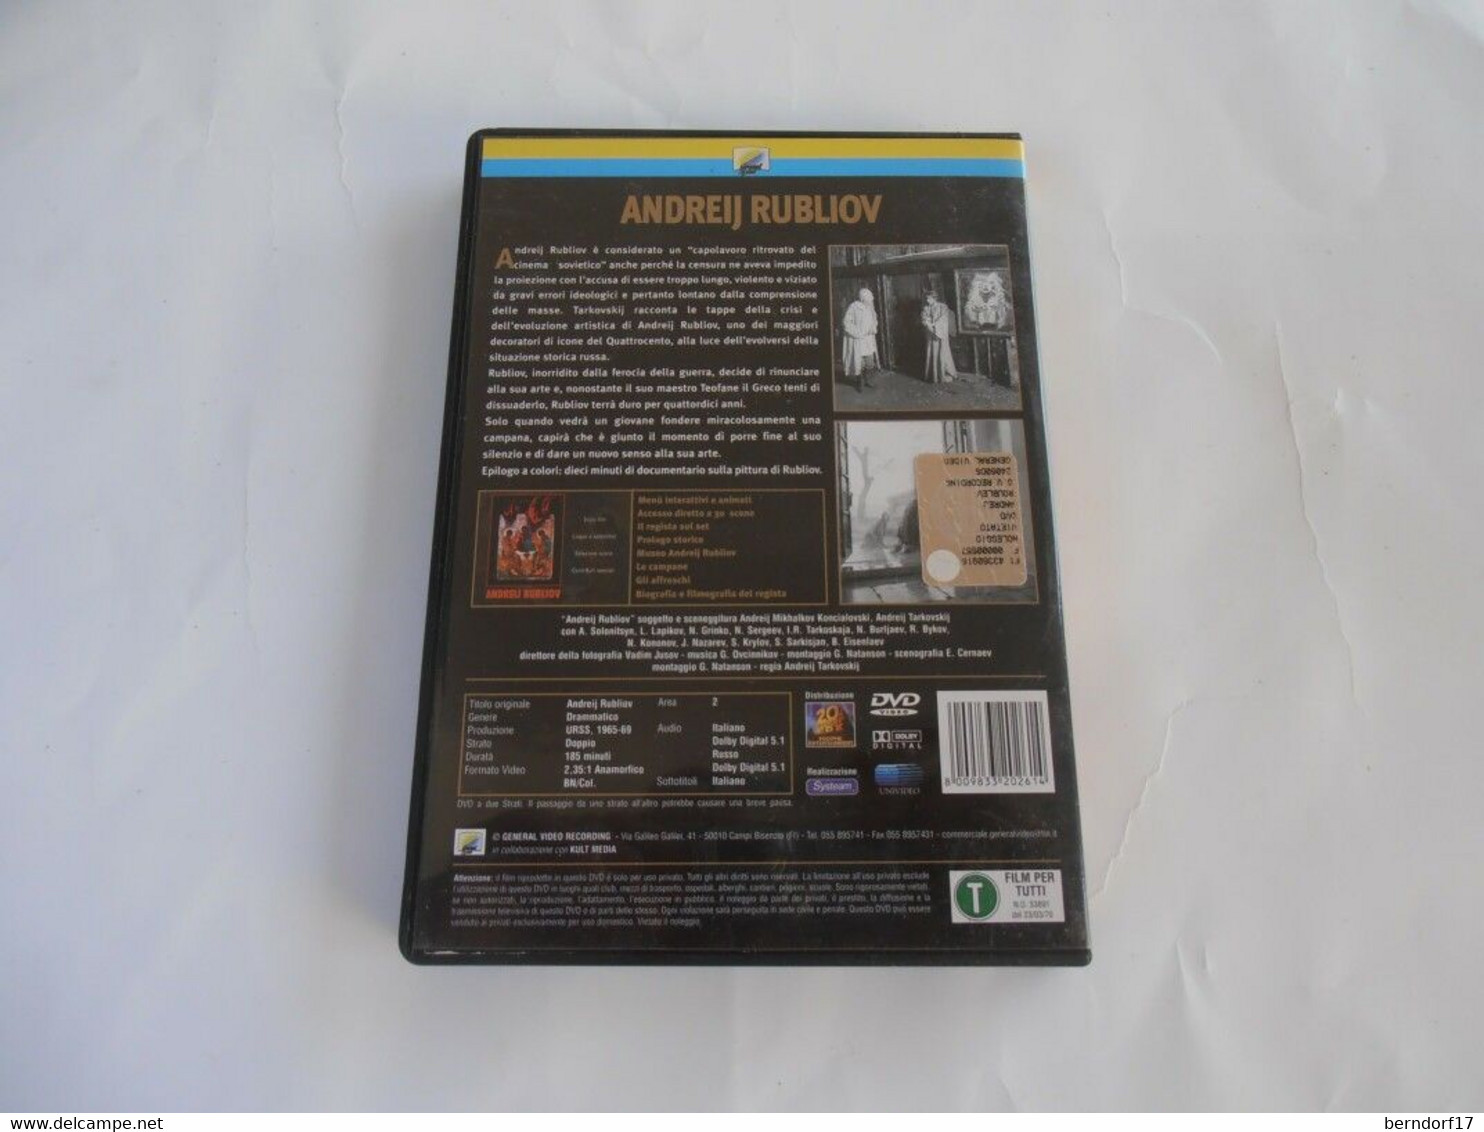 Andrij Tarkovskij - Andreij Rubliov - DVD - Musik-DVD's